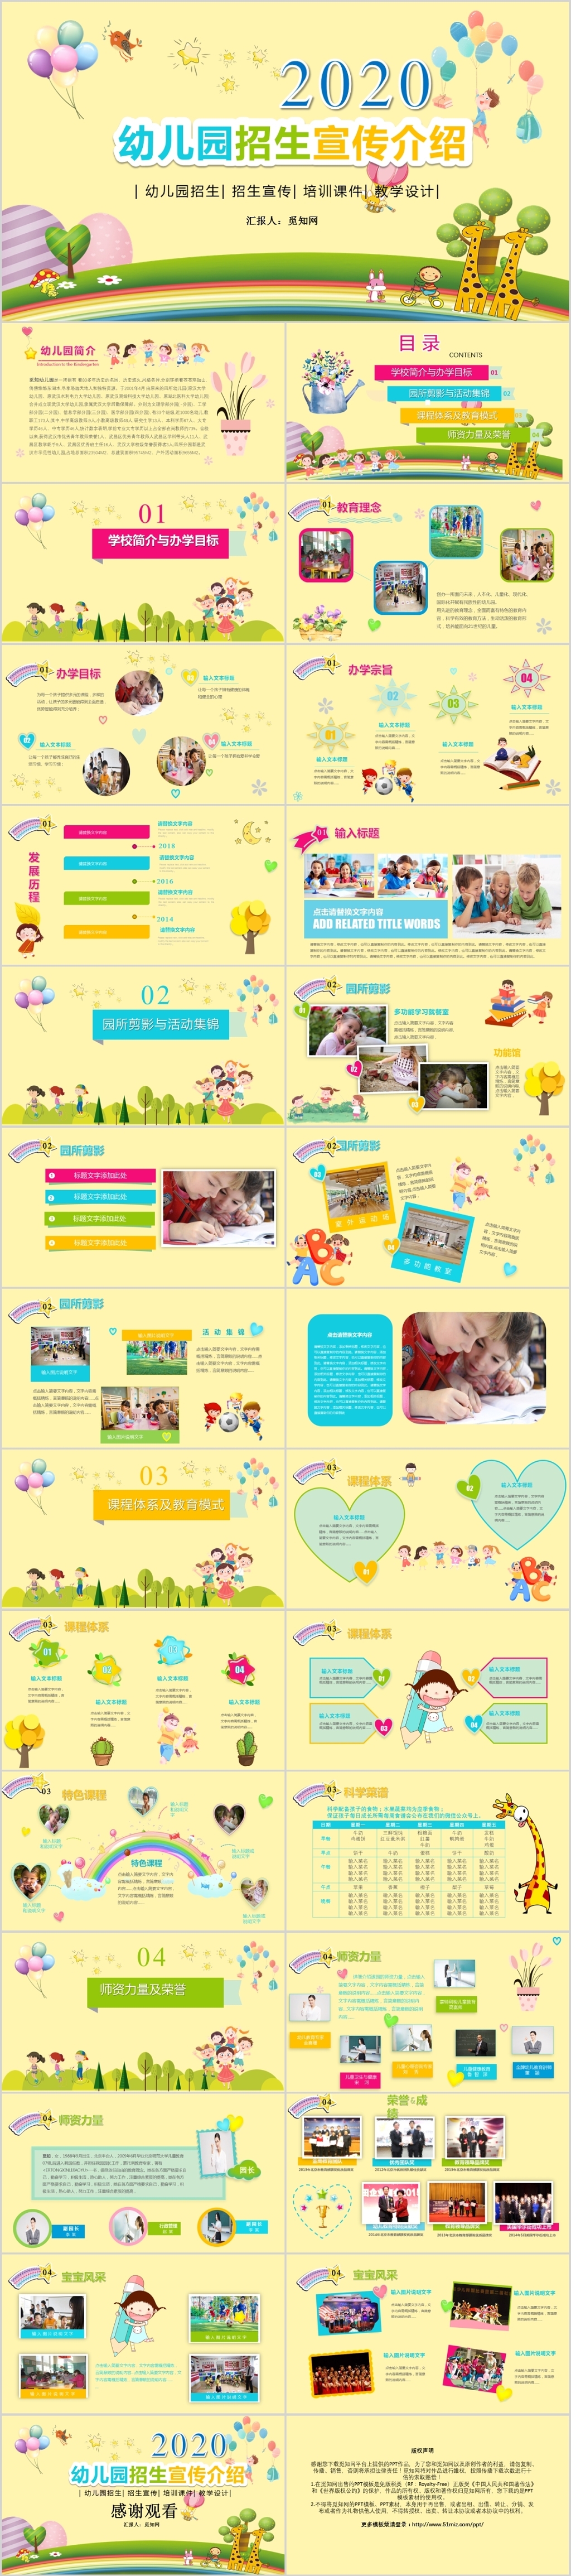 黄色可爱卡通风格幼儿园招生宣传活动策划PPT模板